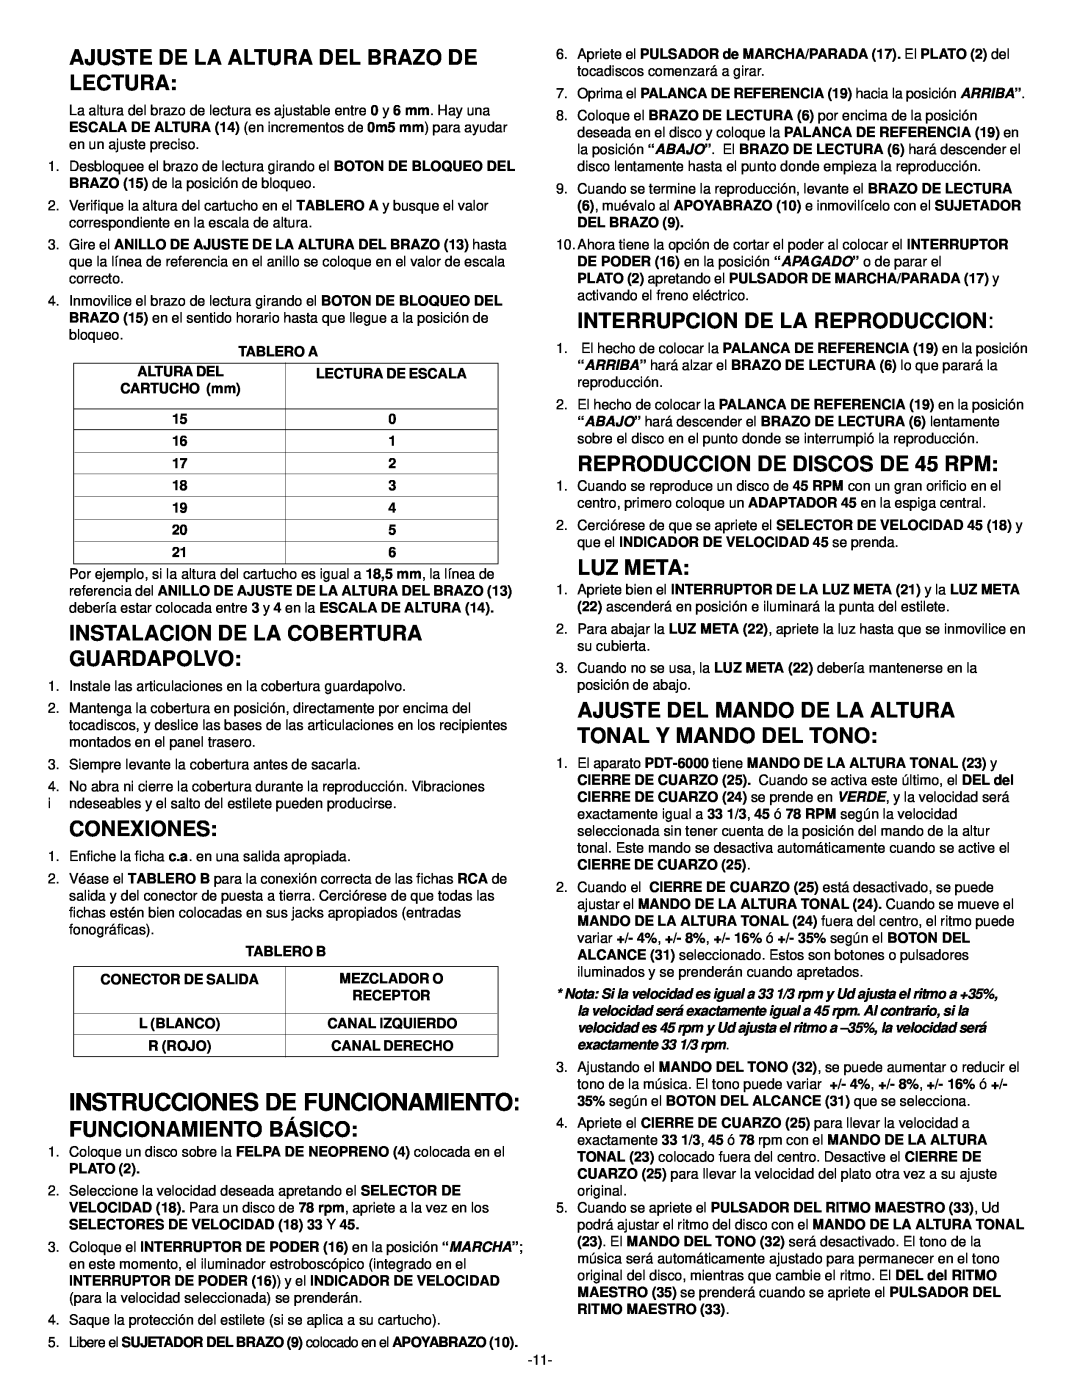 Gemini PDT-6000 manual Instrucciones De Funcionamiento, Ajuste De La Altura Del Brazo De Lectura, Conexiones, Luz Meta 